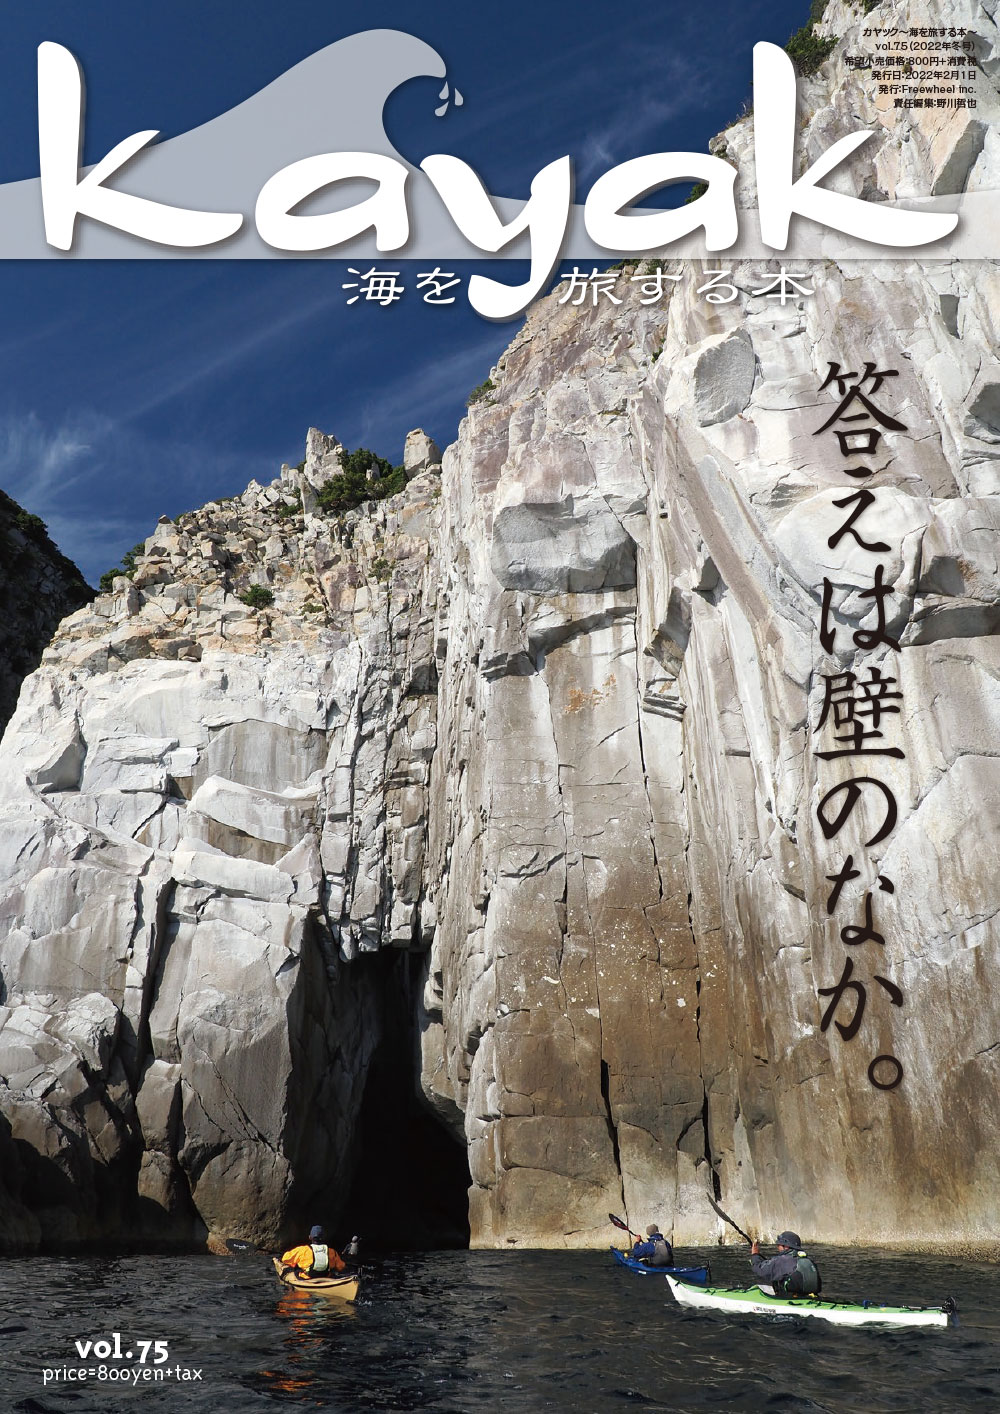 kayak〜海を旅する本 vol.75　発売のお知らせ